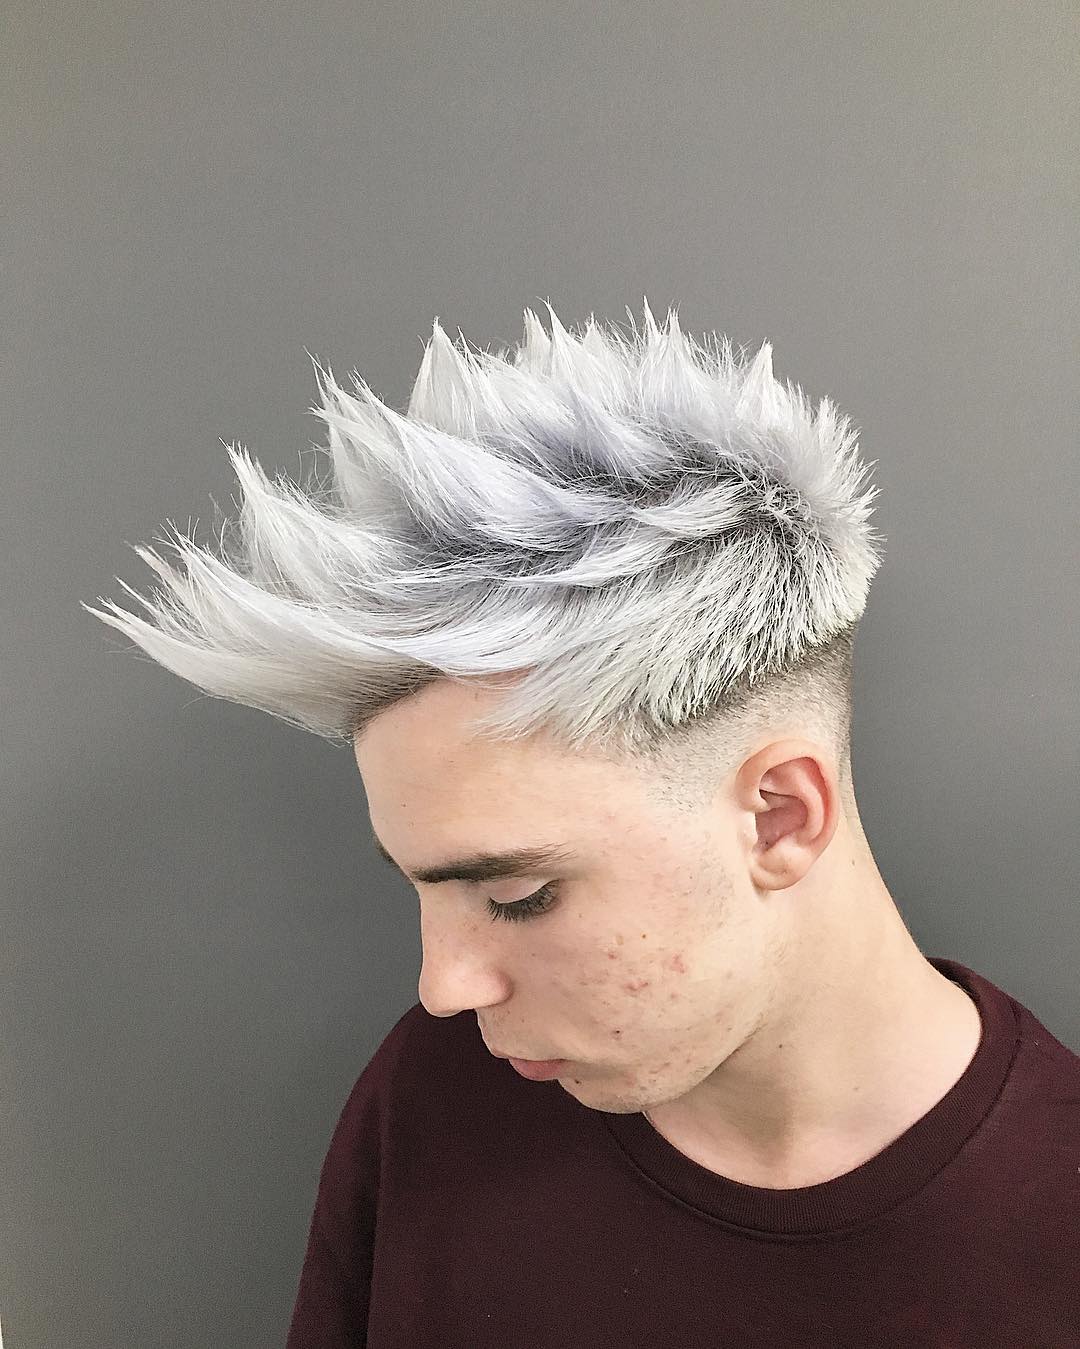 pelo con mechas pintadas de blanco en hombre joven 